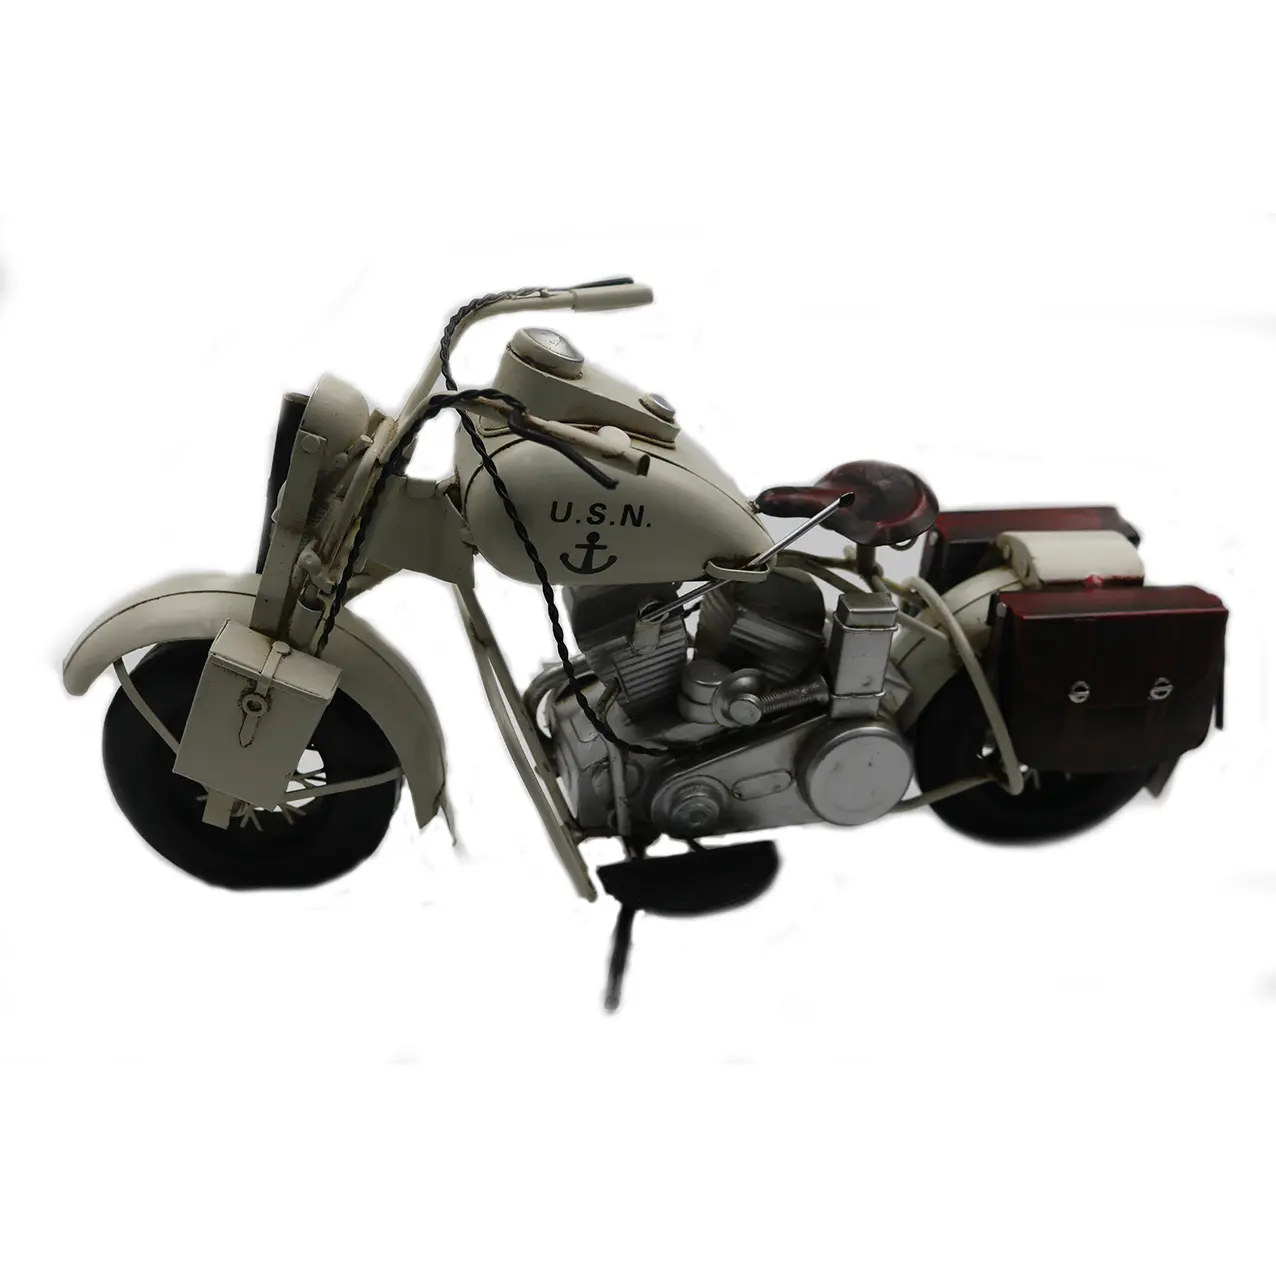 Amerika Harley model sepeda motor buatan tangan ornamen kerajinan dengan roda putar besi putih kustom Jerman model mobil boneka